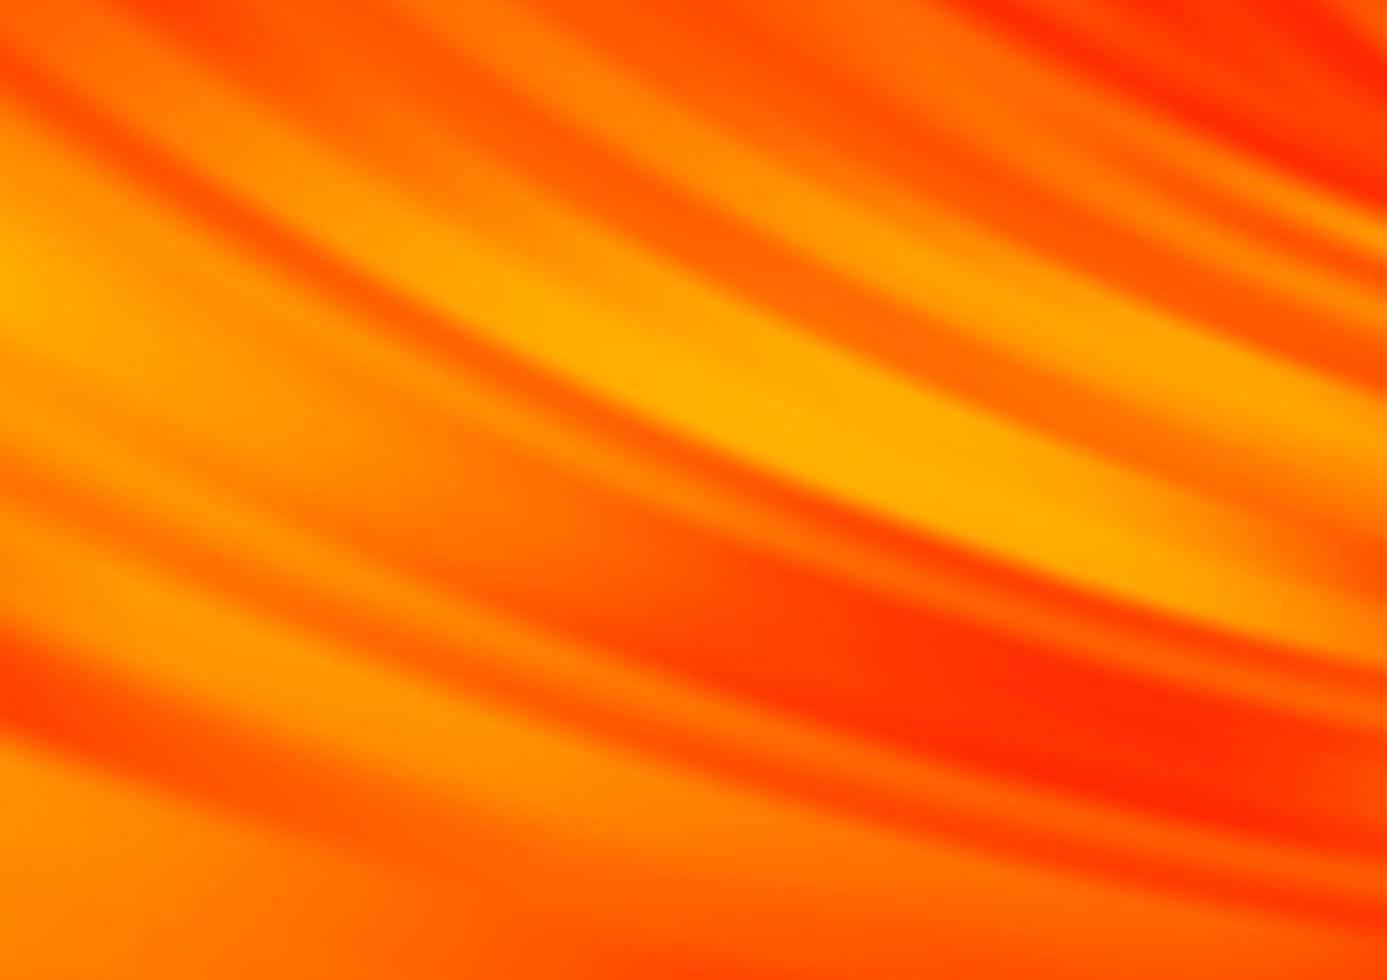 motif vectoriel orange clair avec des lignes étroites.